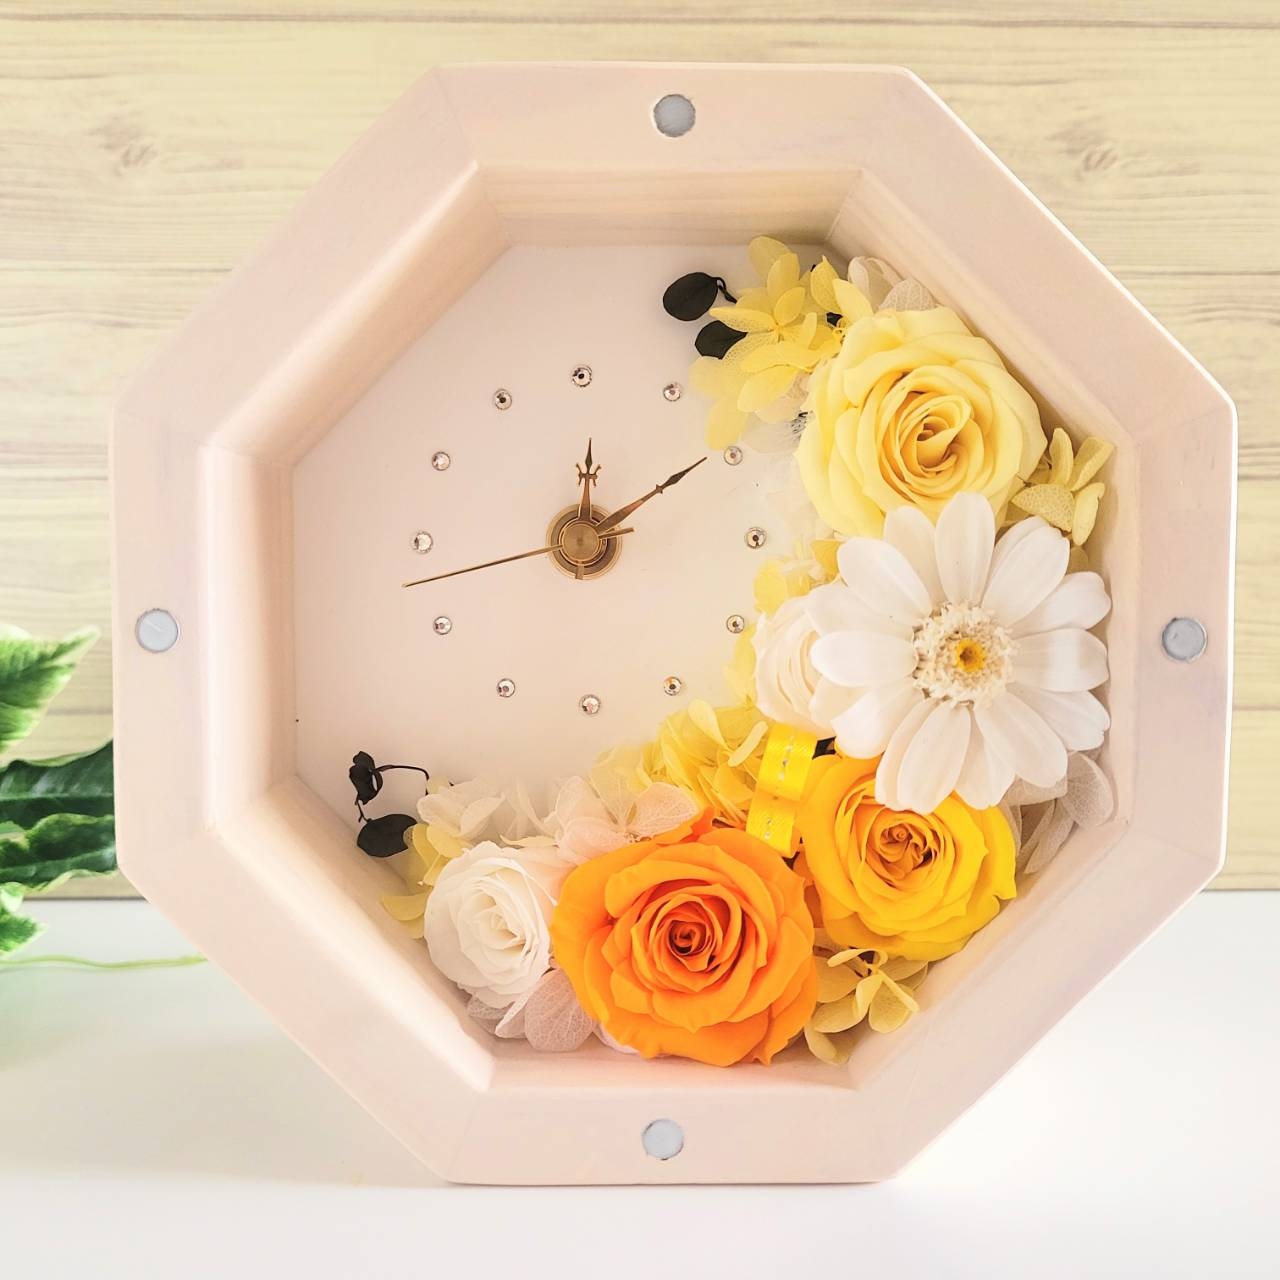 【花時計】プリザーブドフラワー置き掛け兼用八角形時計 イエローハーバリウムアトマイザー セット